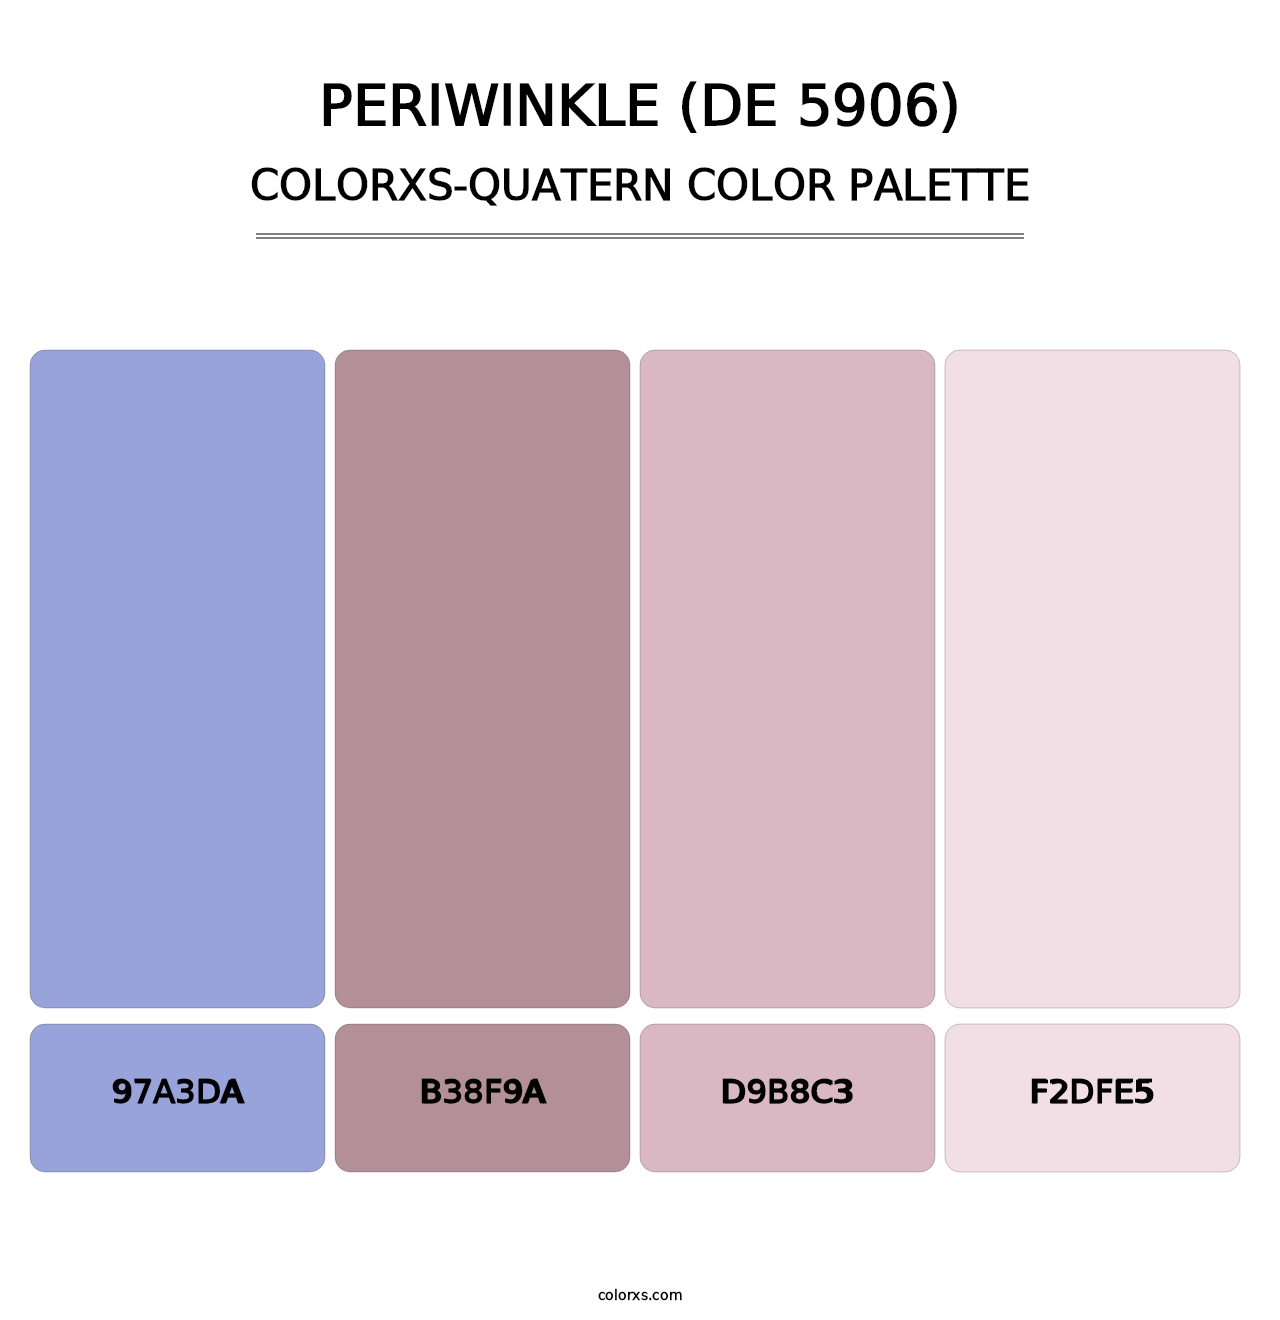 Periwinkle (DE 5906) - Colorxs Quatern Palette